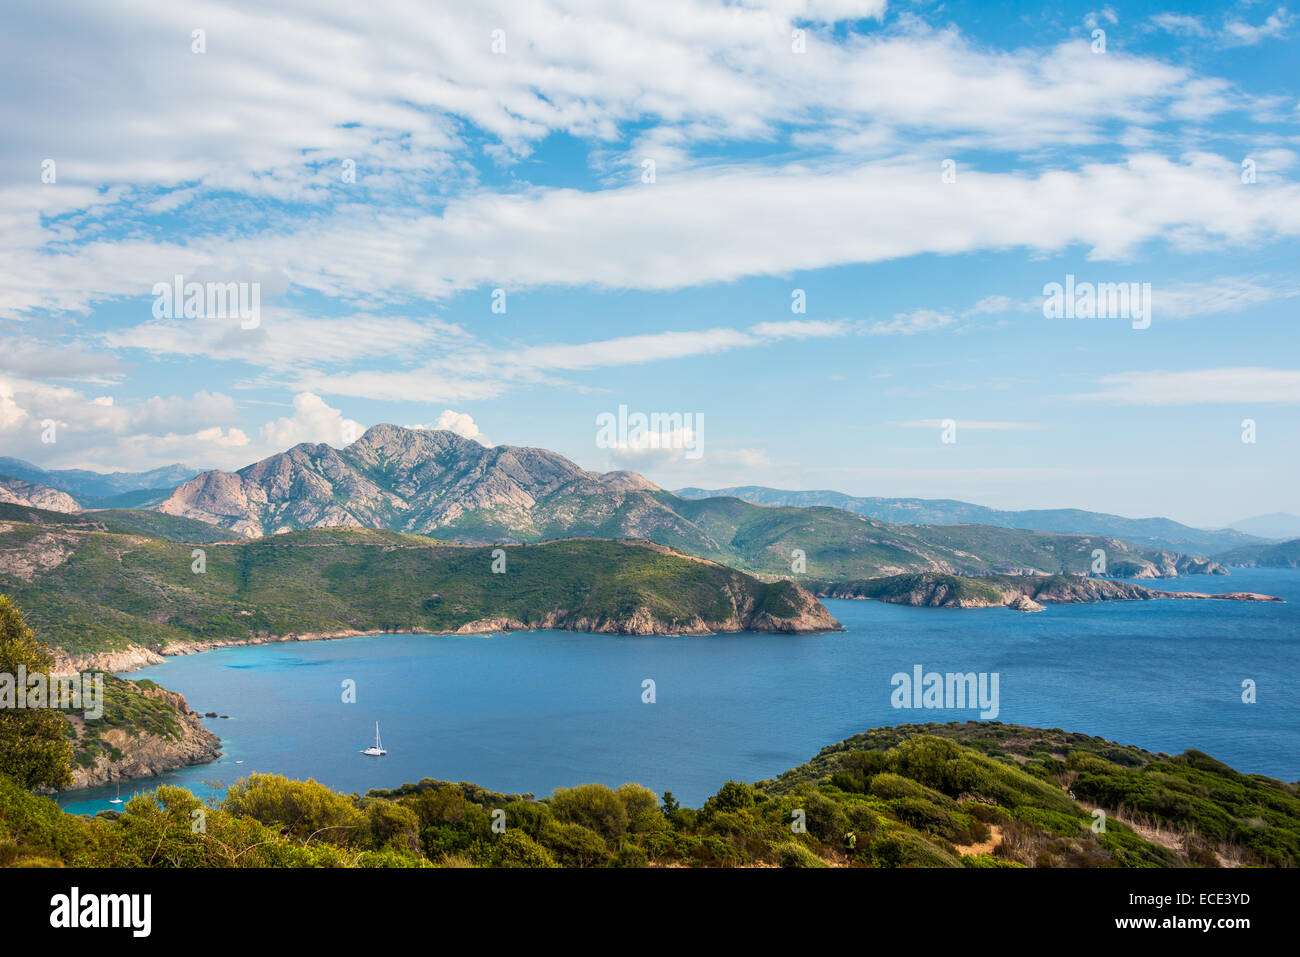 Bay avec un bateau à voile, du littoral et des paysages de montagne, Golfe de Porto, Corse, France Banque D'Images